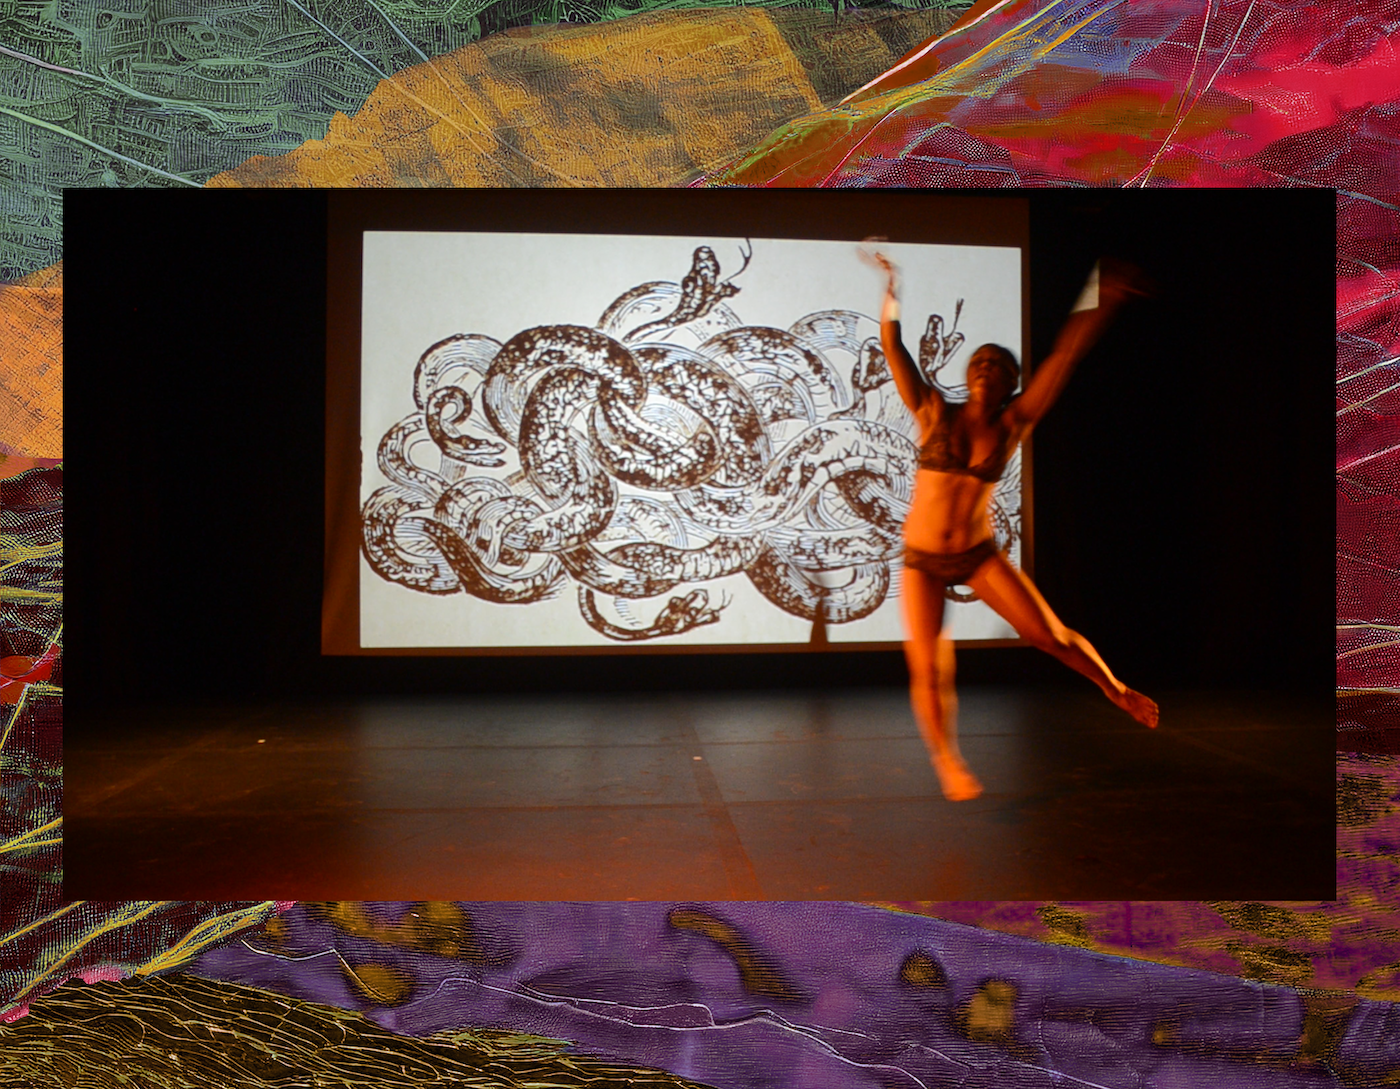 Alttext en alemán: Una bailarina frente a una proyección de dibujos de serpientes. Texto alternativo en inglés: Una bailarina frente a una proyección de dibujos de serpientes.